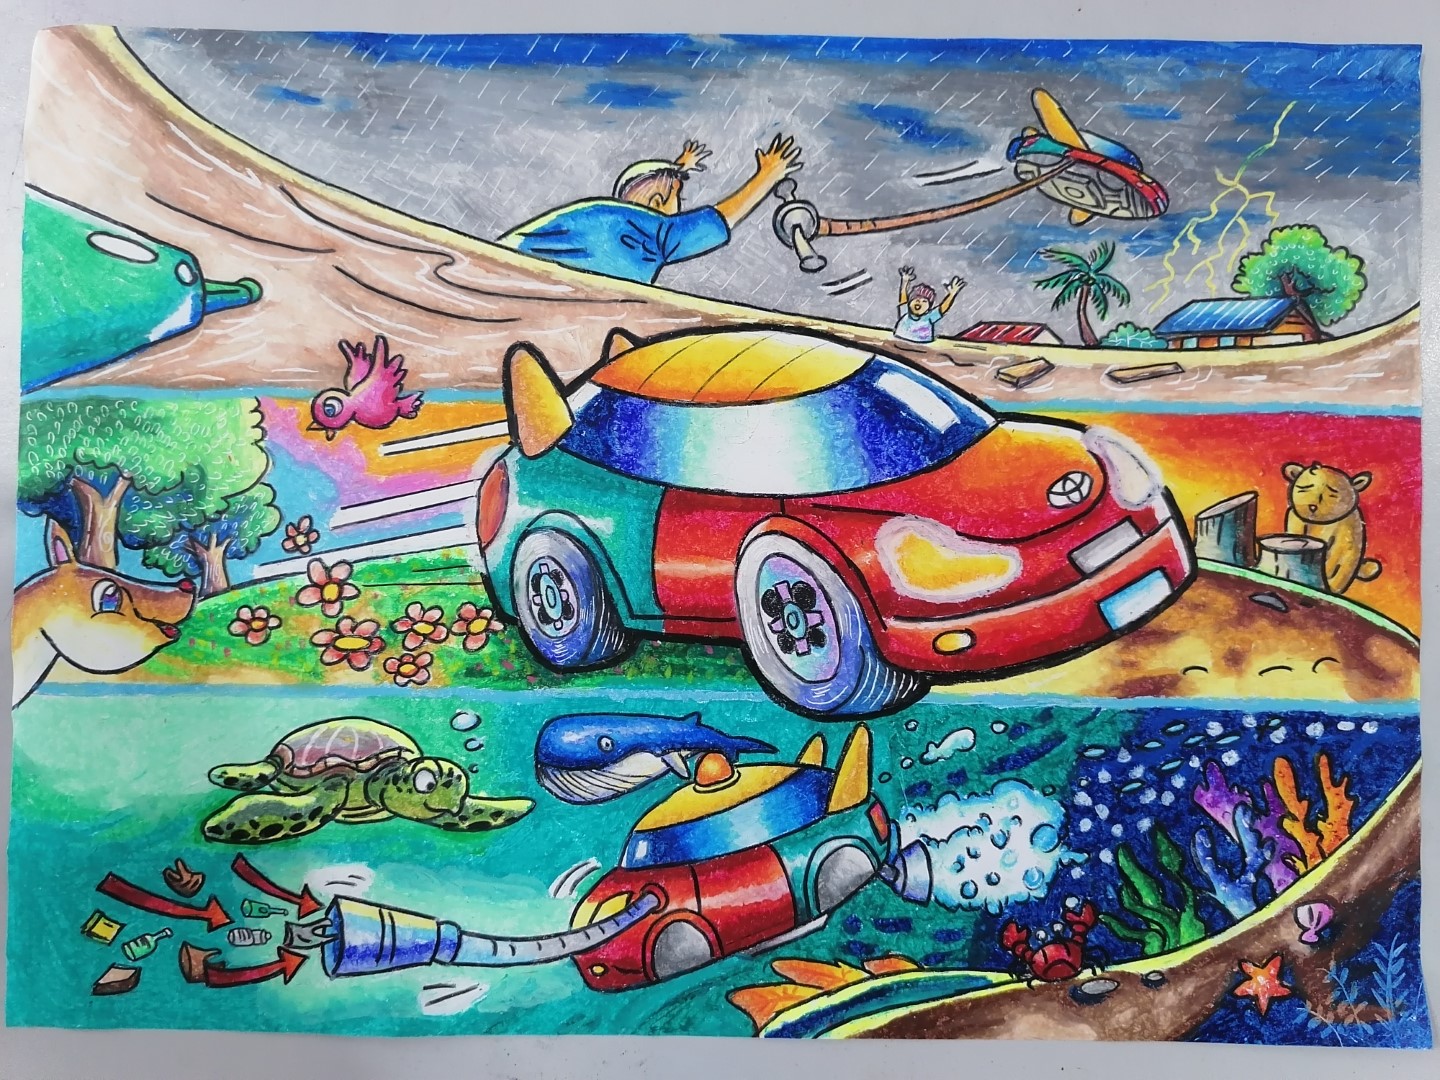 Cuộc thi vẽ tranh quốc tế Toyota Chiếc ô tô mơ ước lần thứ 9